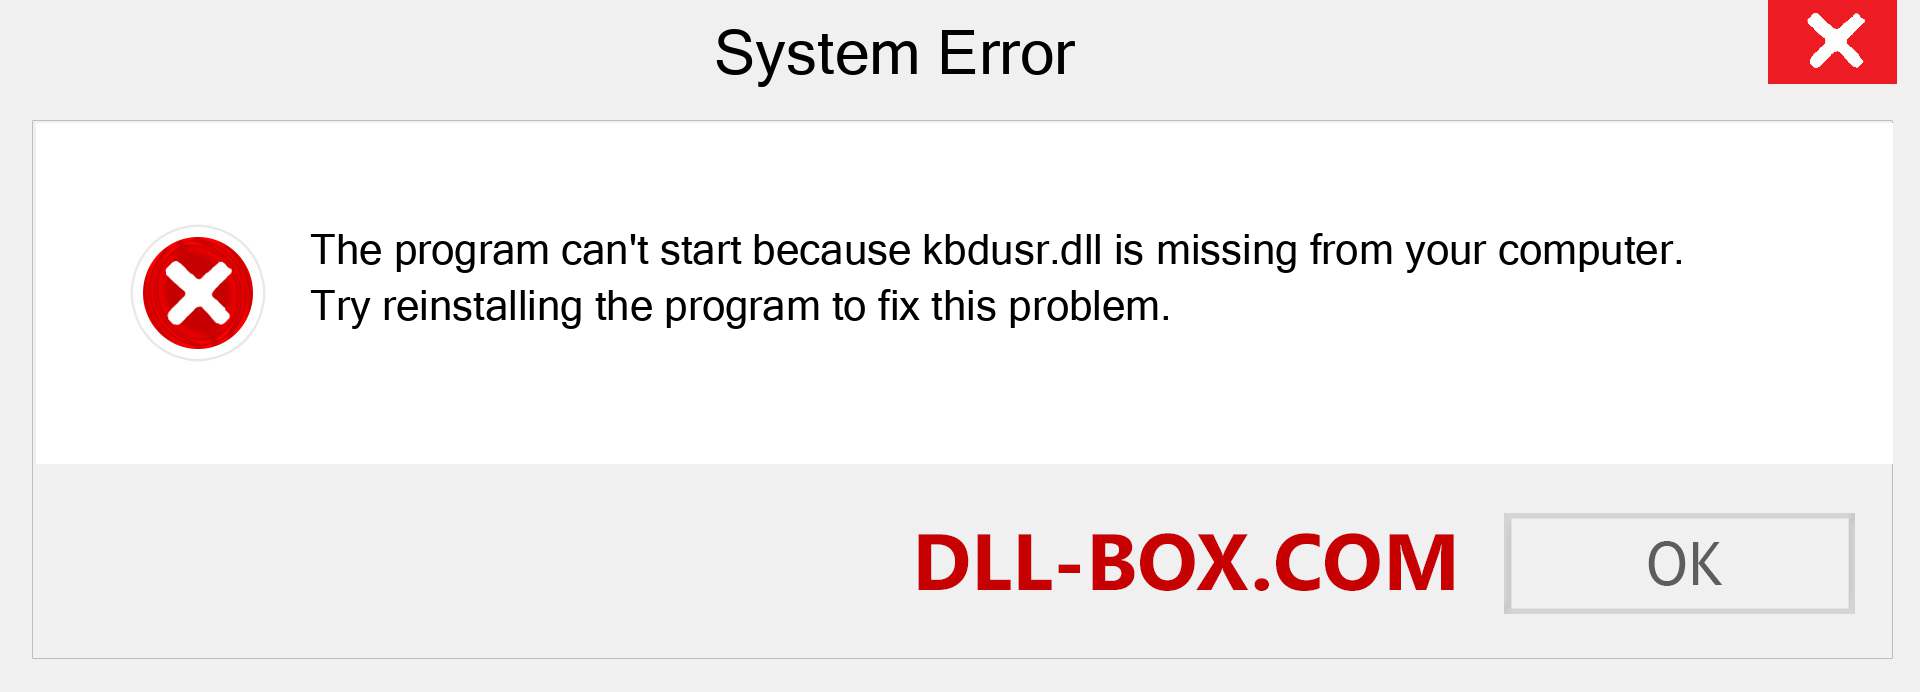  kbdusr.dll file is missing?. Download for Windows 7, 8, 10 - Fix  kbdusr dll Missing Error on Windows, photos, images